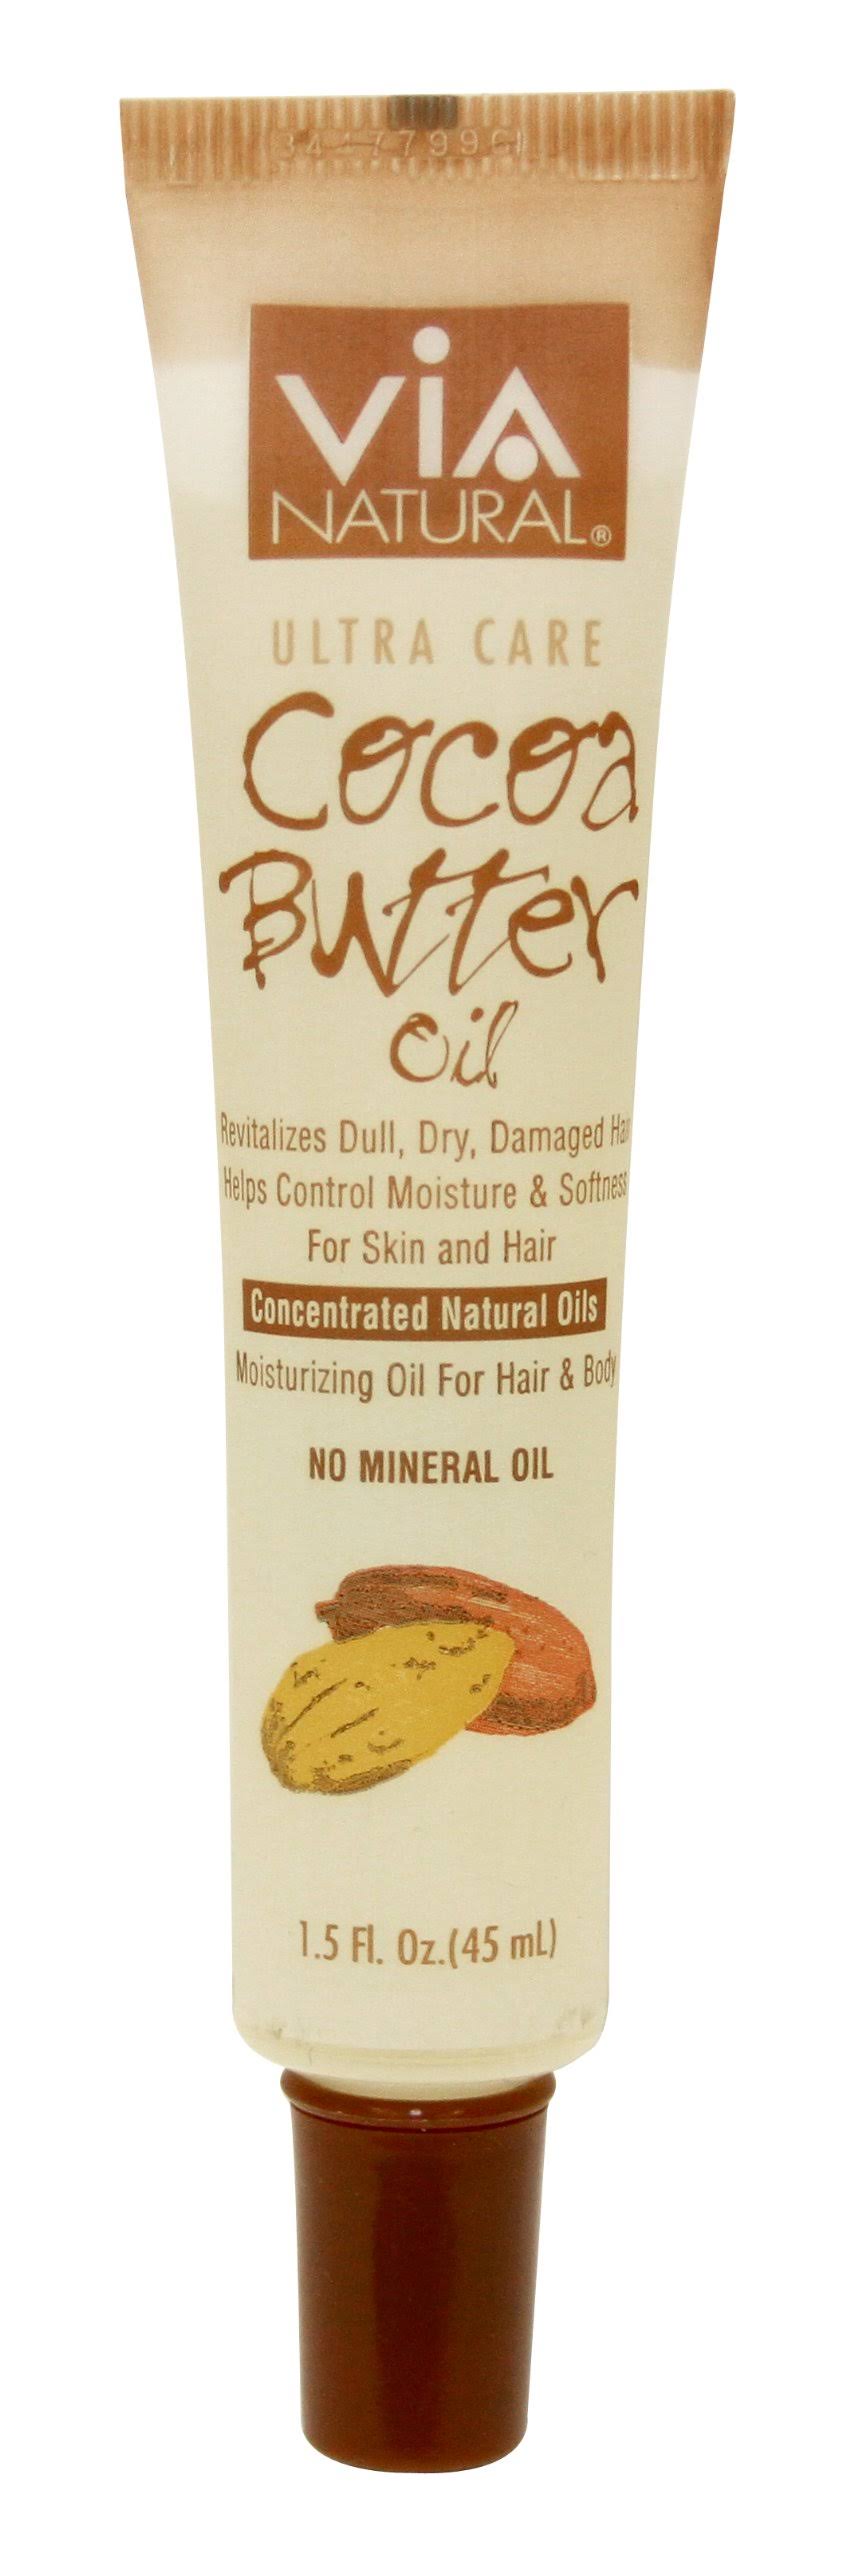 Via Natural Ultra Care Cocoa Butter Oil - 1.5oz